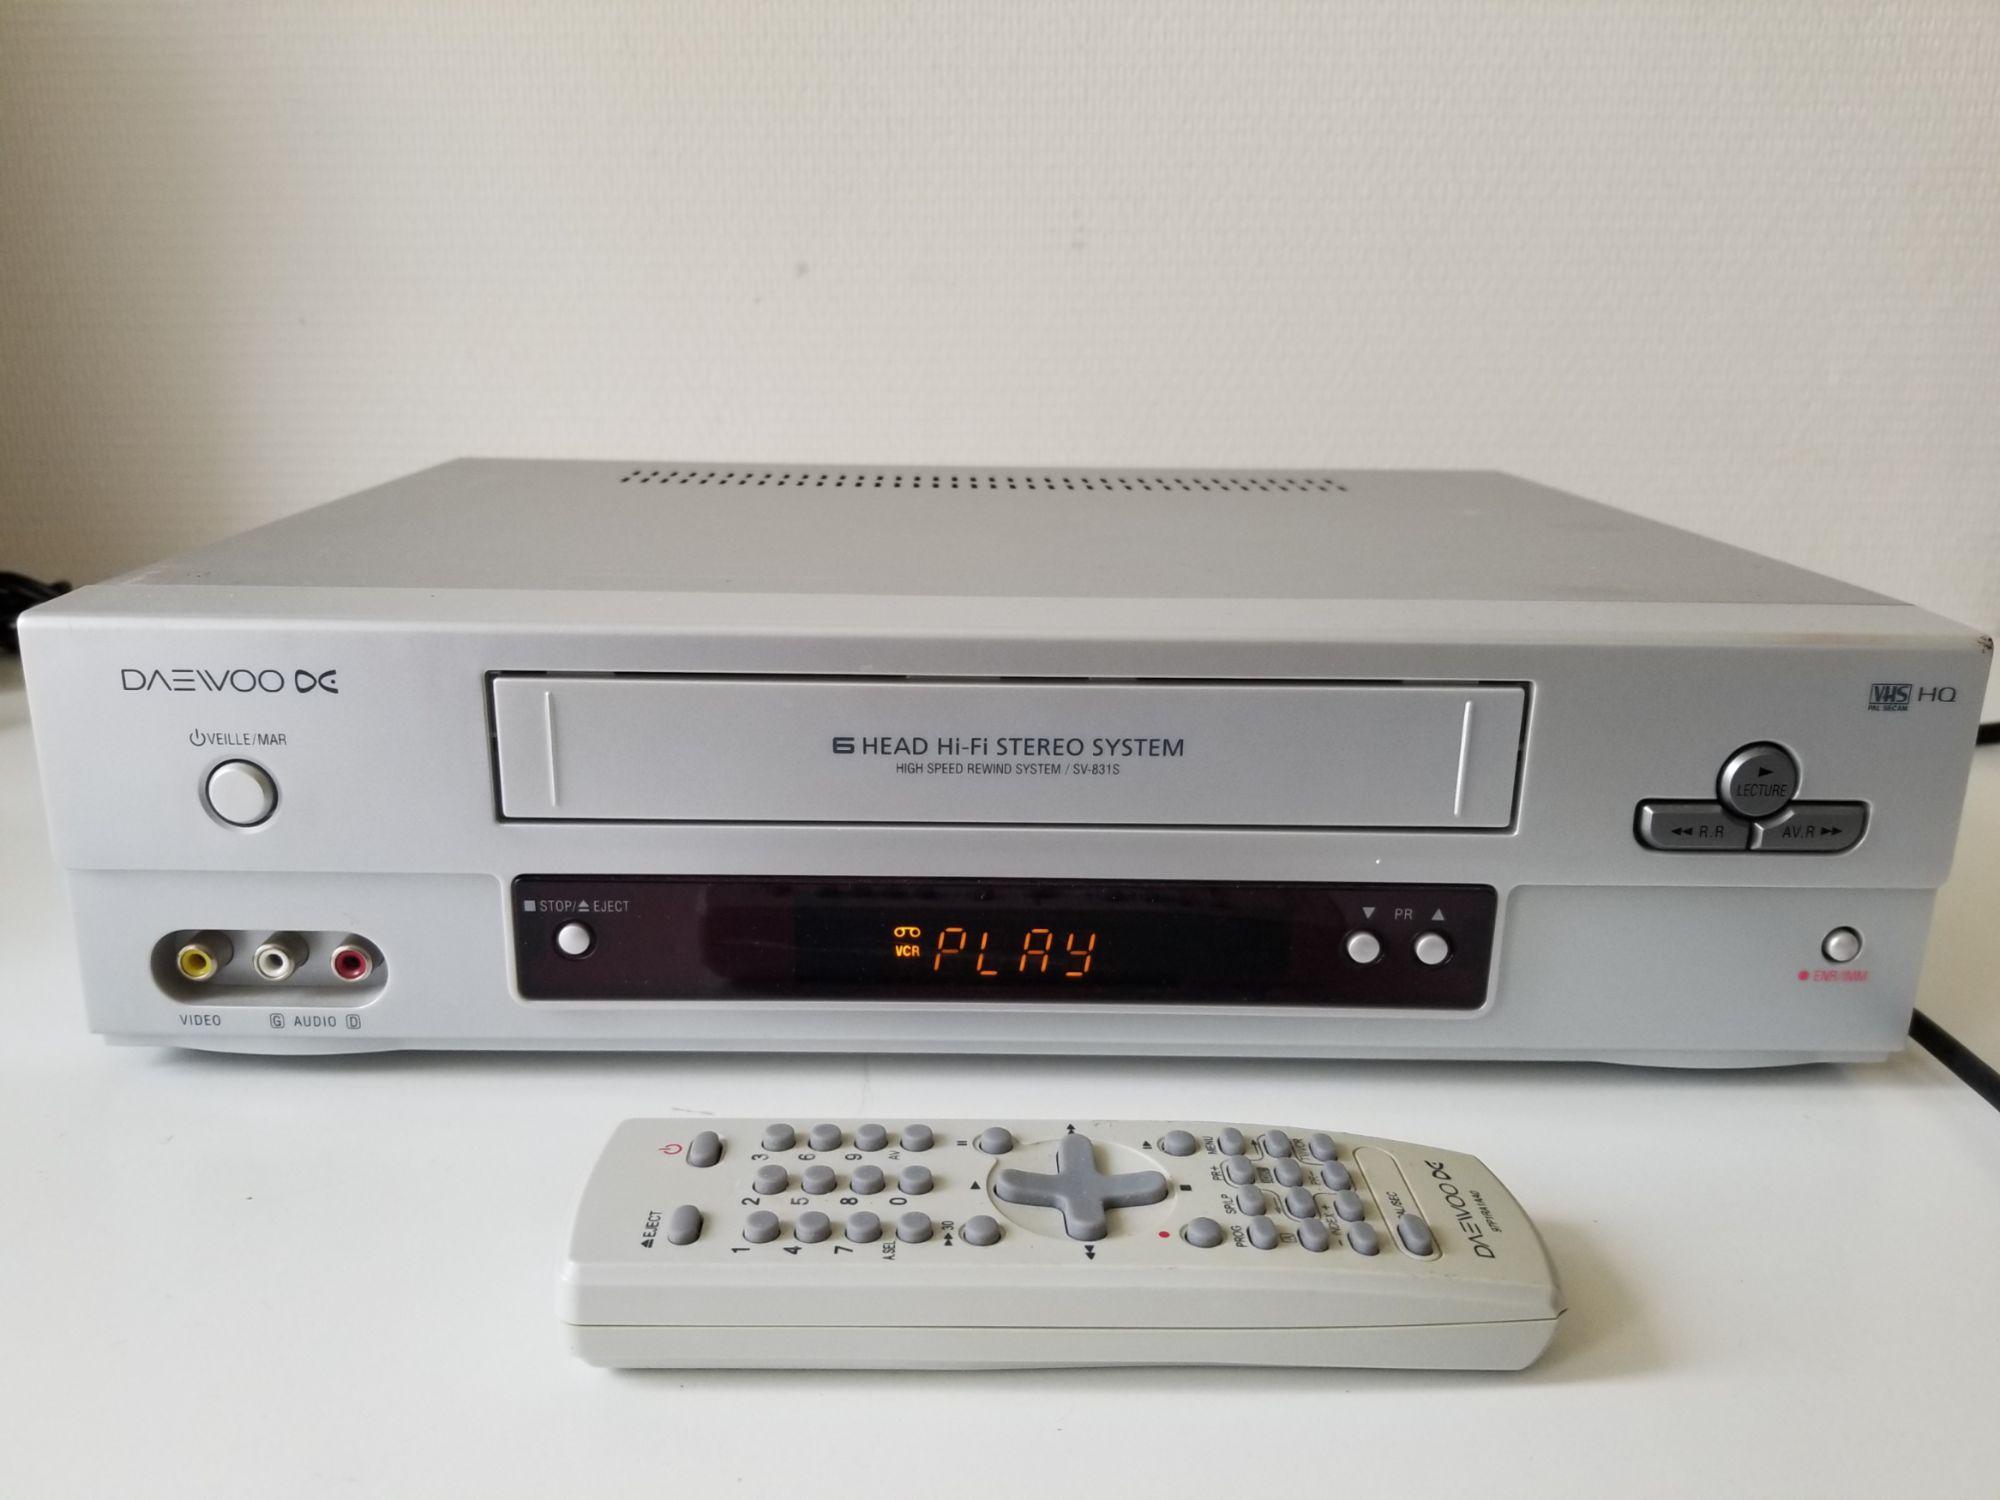 MAGNETOSCOPE BLUESKY VCS6000 LECTEUR ENREGISTREUR CASSETTE VIDEO VHS HIFI  NEUF